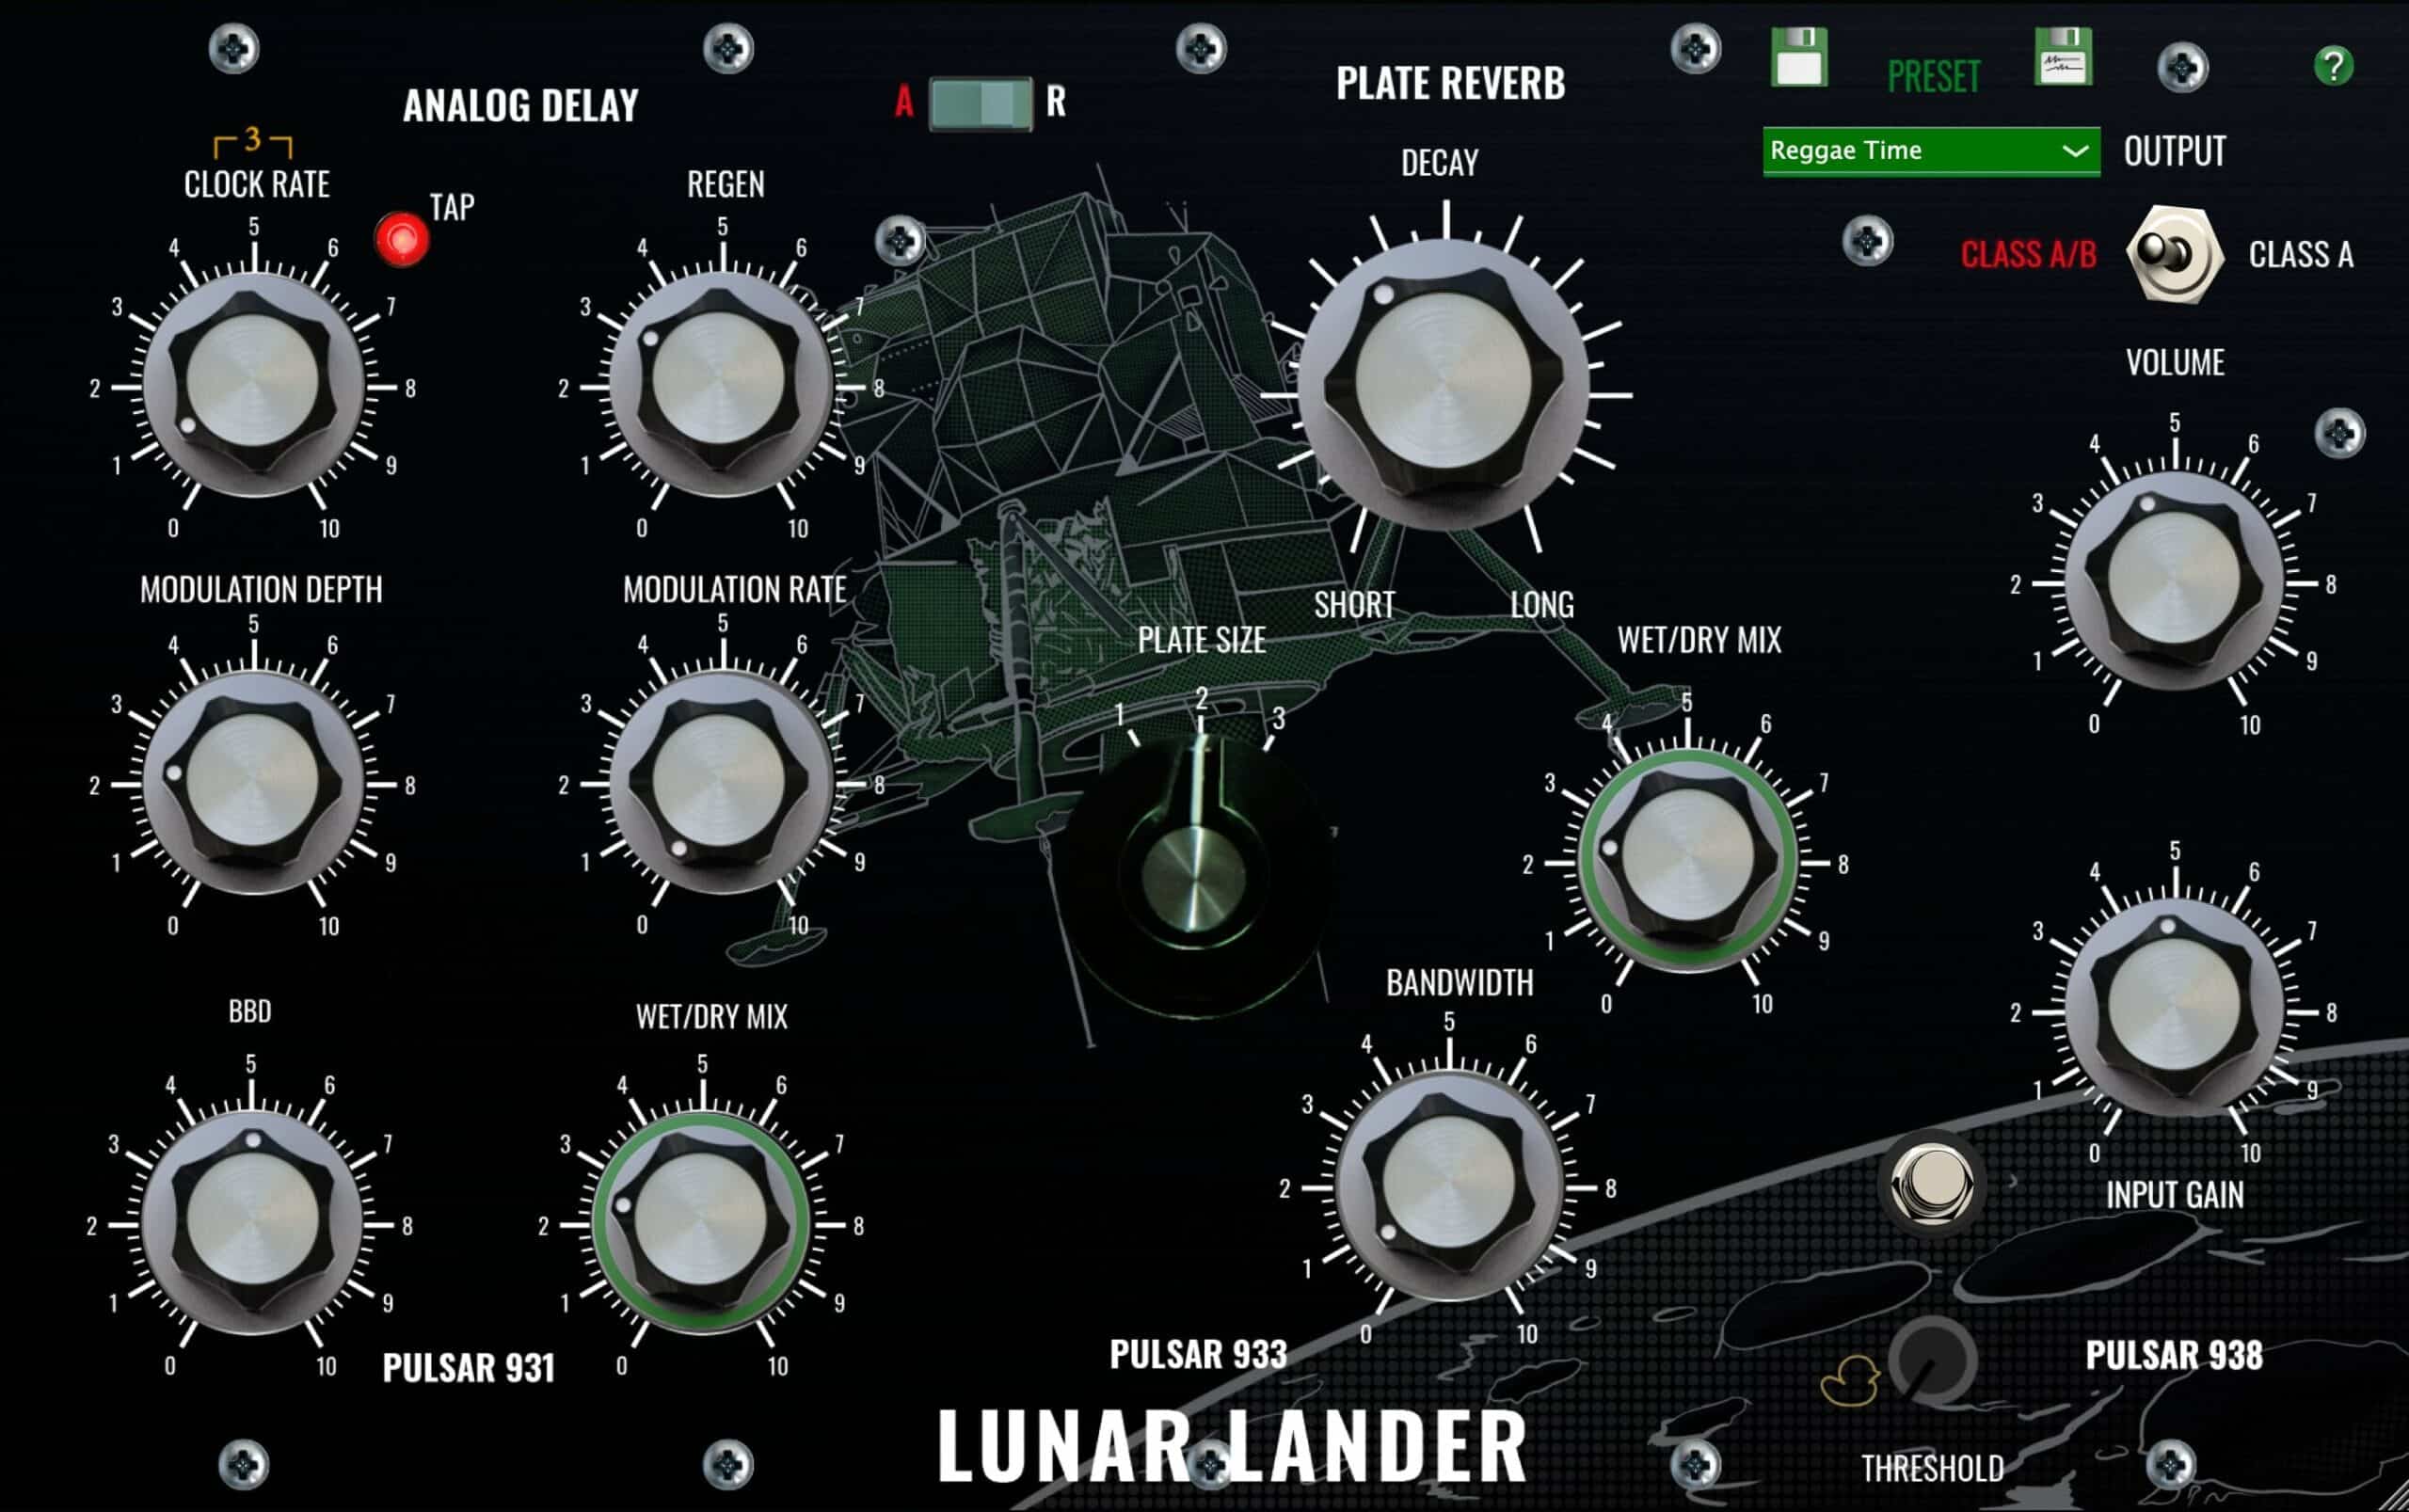 Lunar Lander Version 1.7 Released